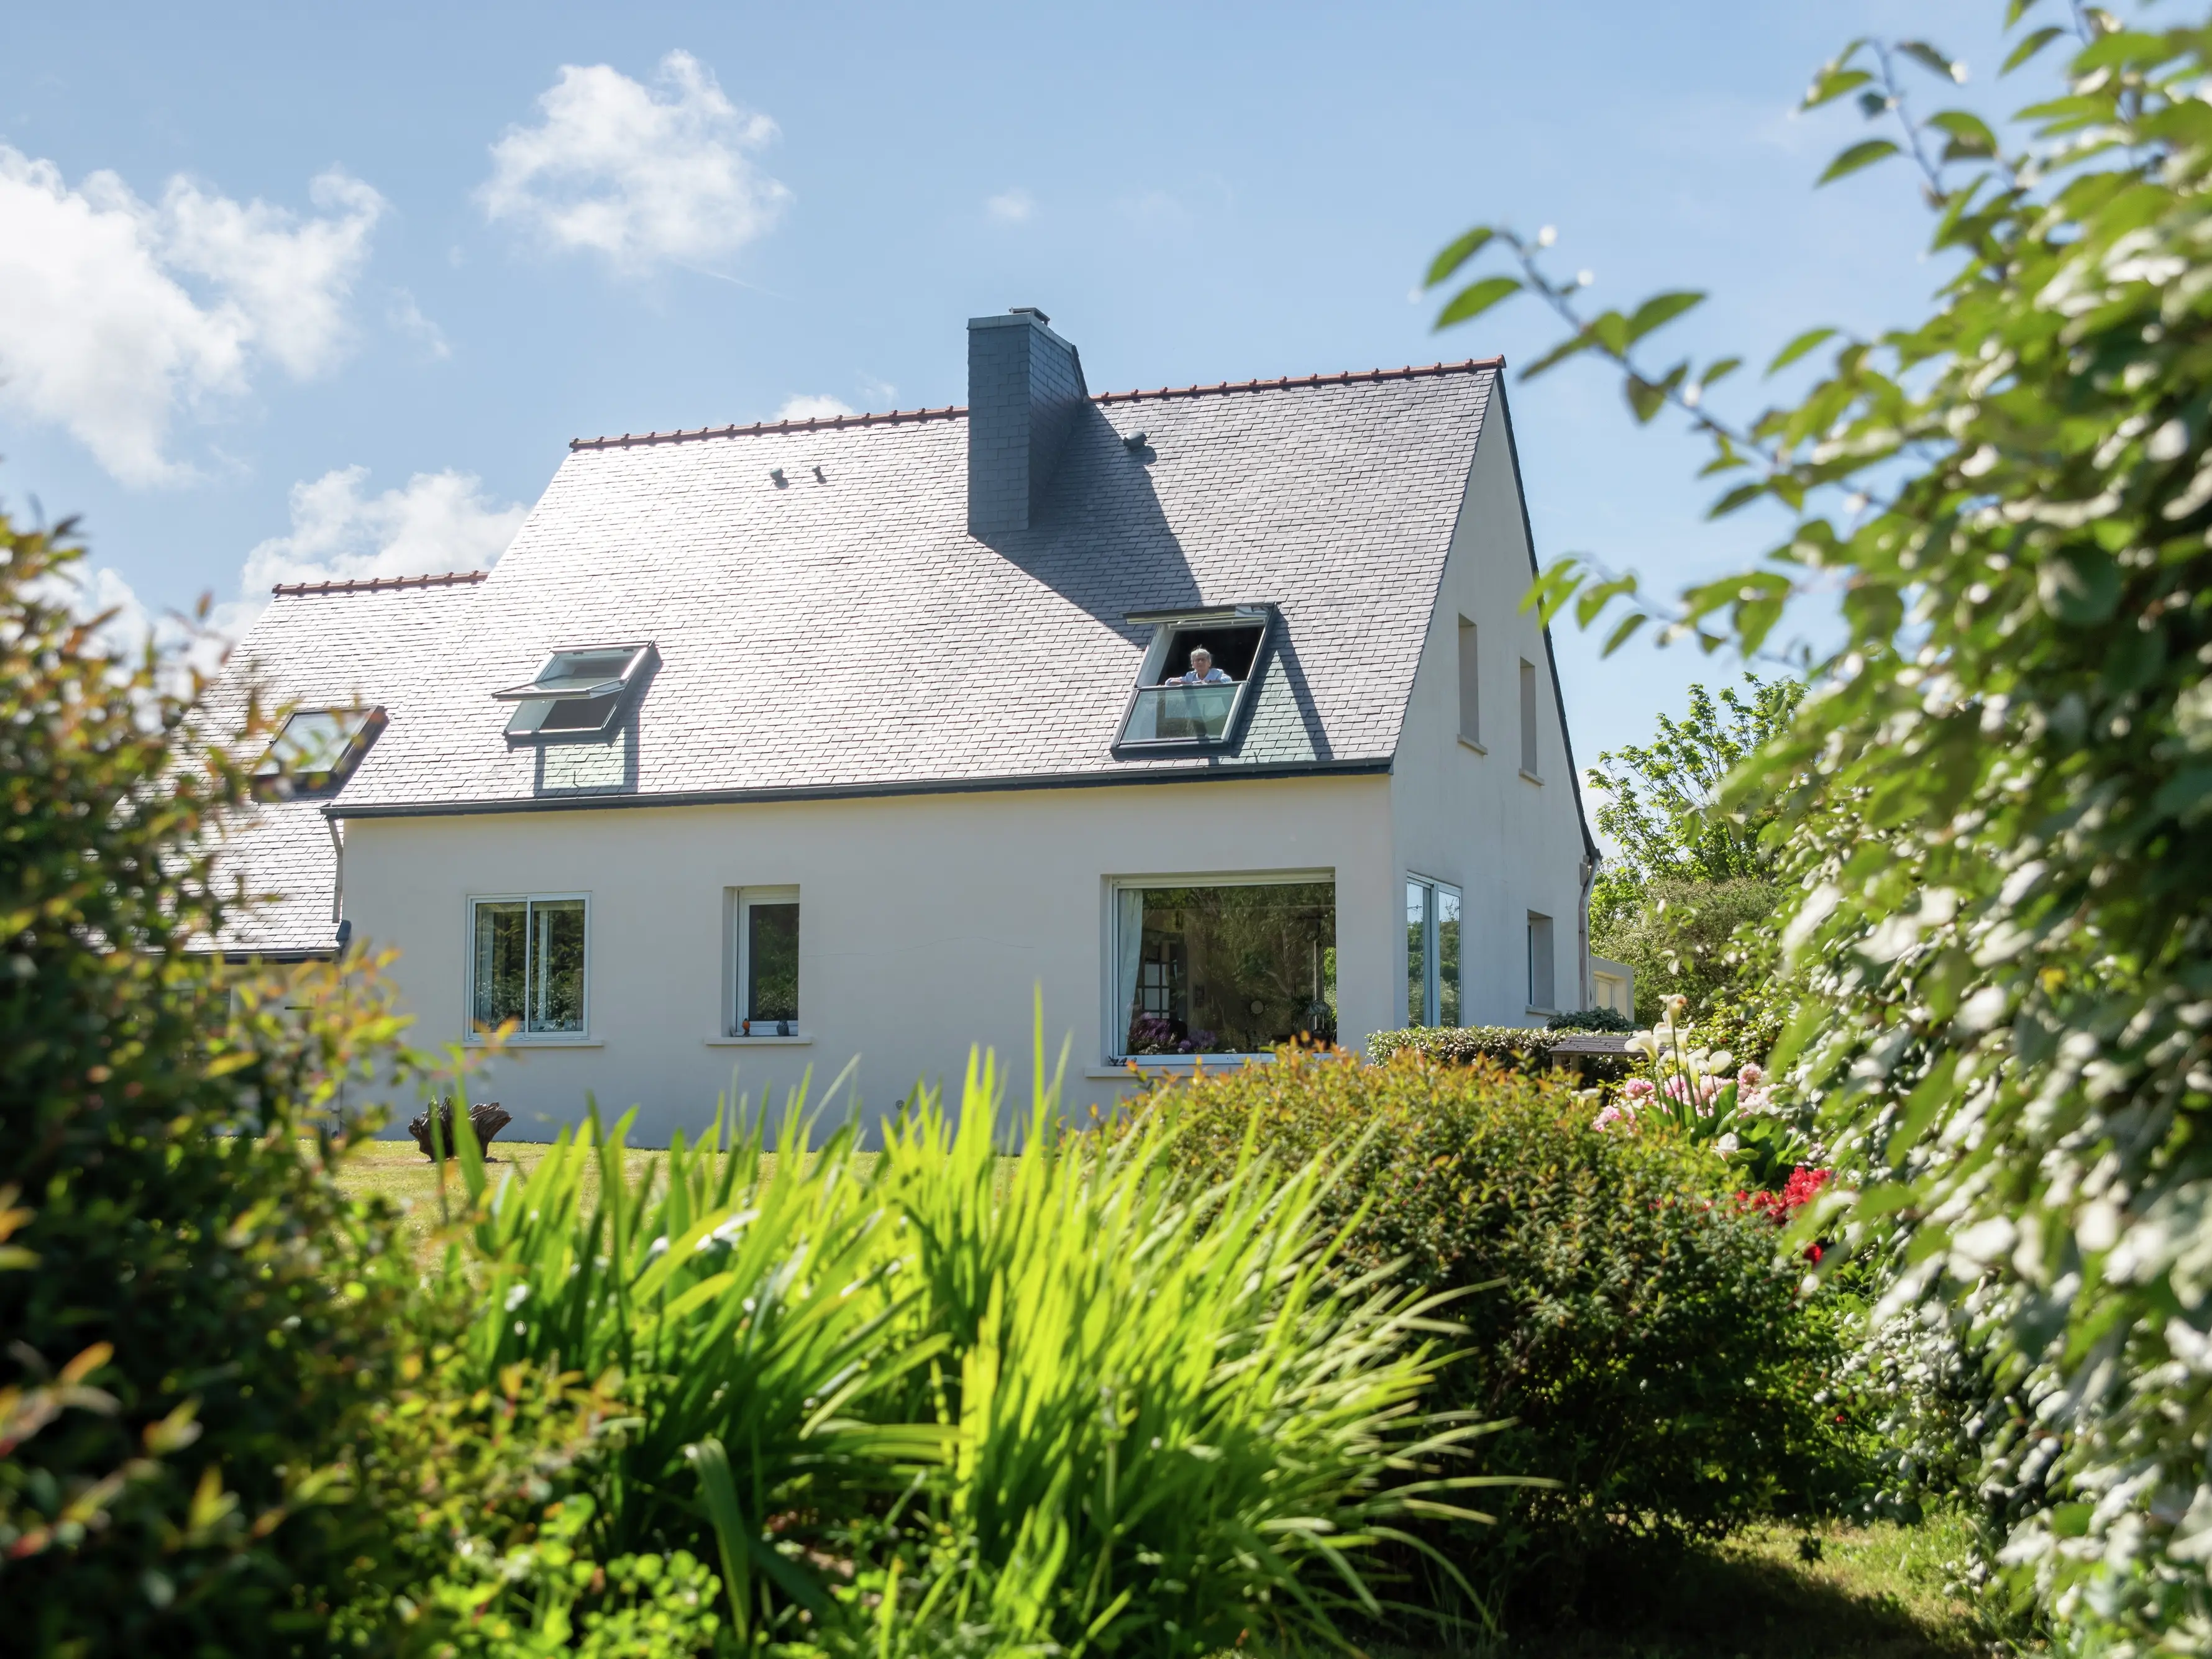 Maison individuelle blanche avec fenêtre de toit VELUX, entourée d'un jardin sous un ciel bleu.